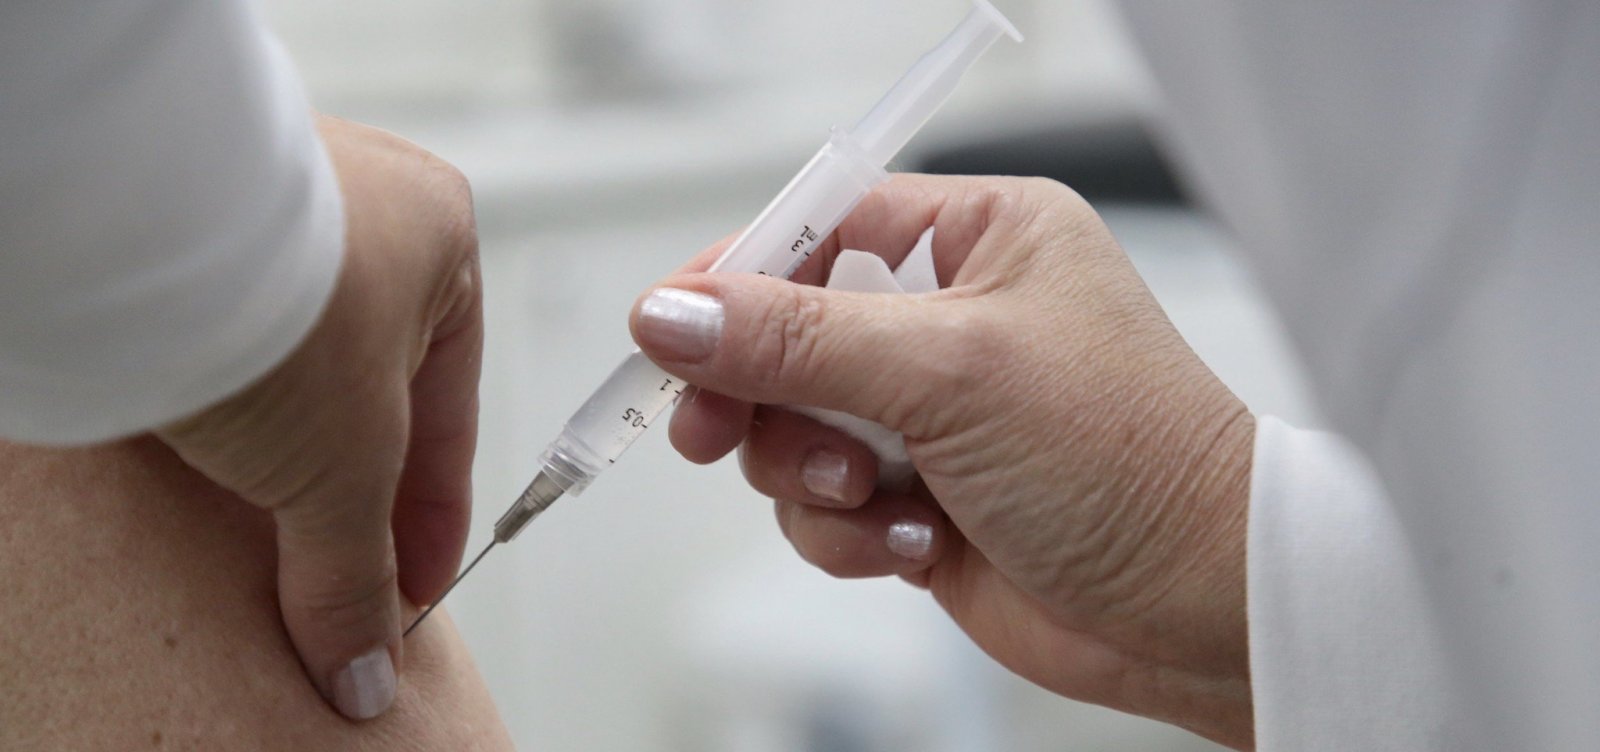 Anvisa avalia o uso emergencial de duas vacinas contra a Covid-19 neste domingo